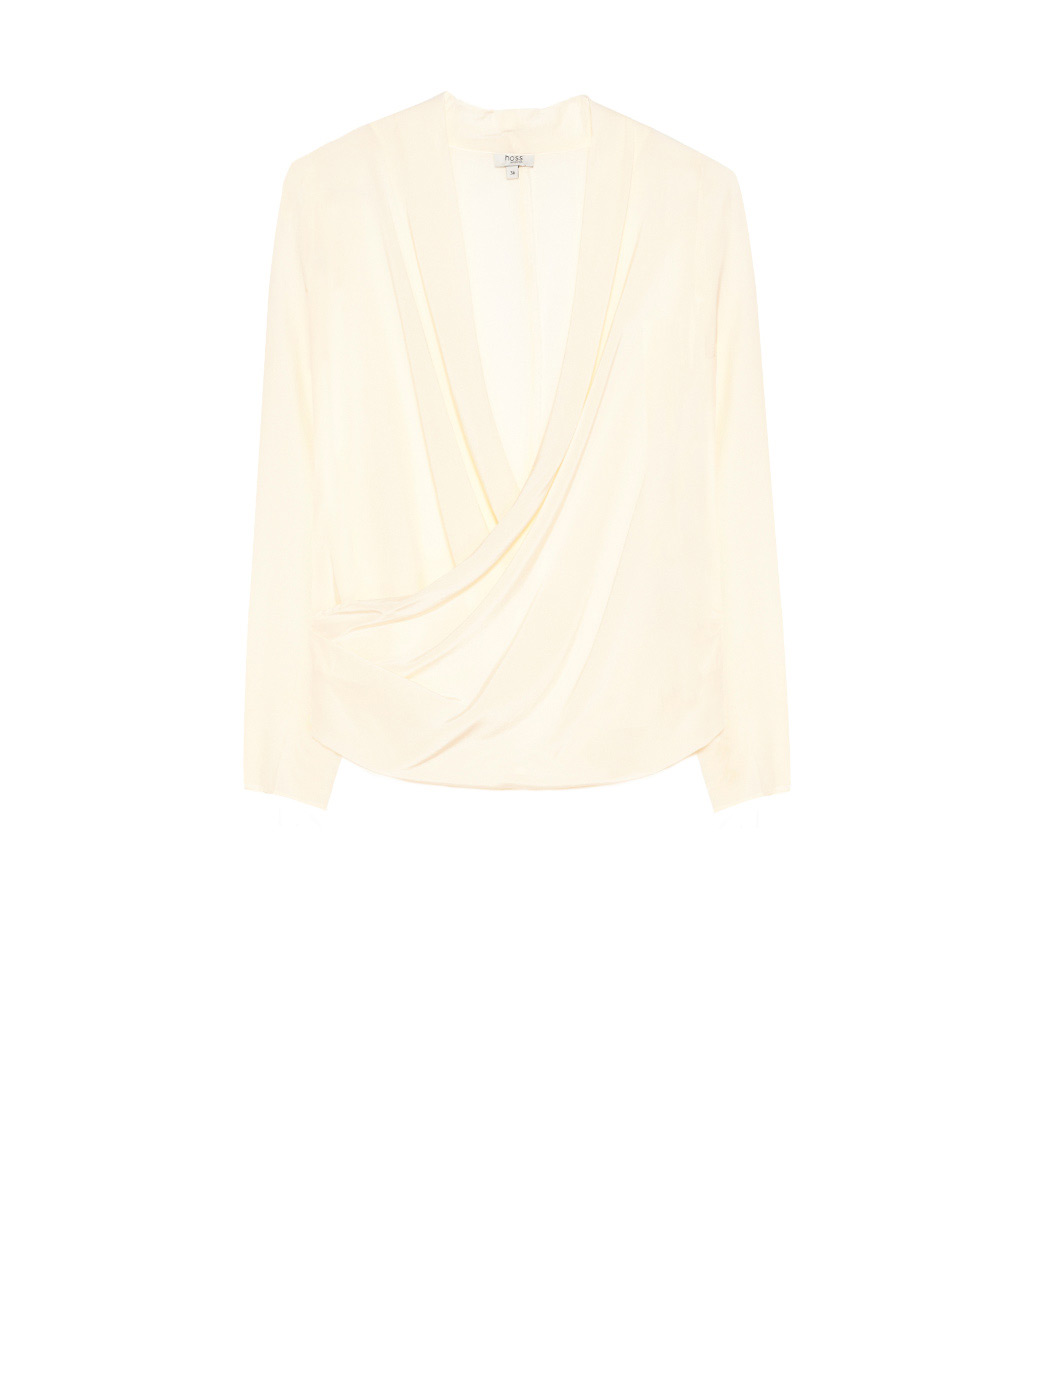 Blusa semitransparente confeccionada en algodón con diseño de net de nylon y algodón